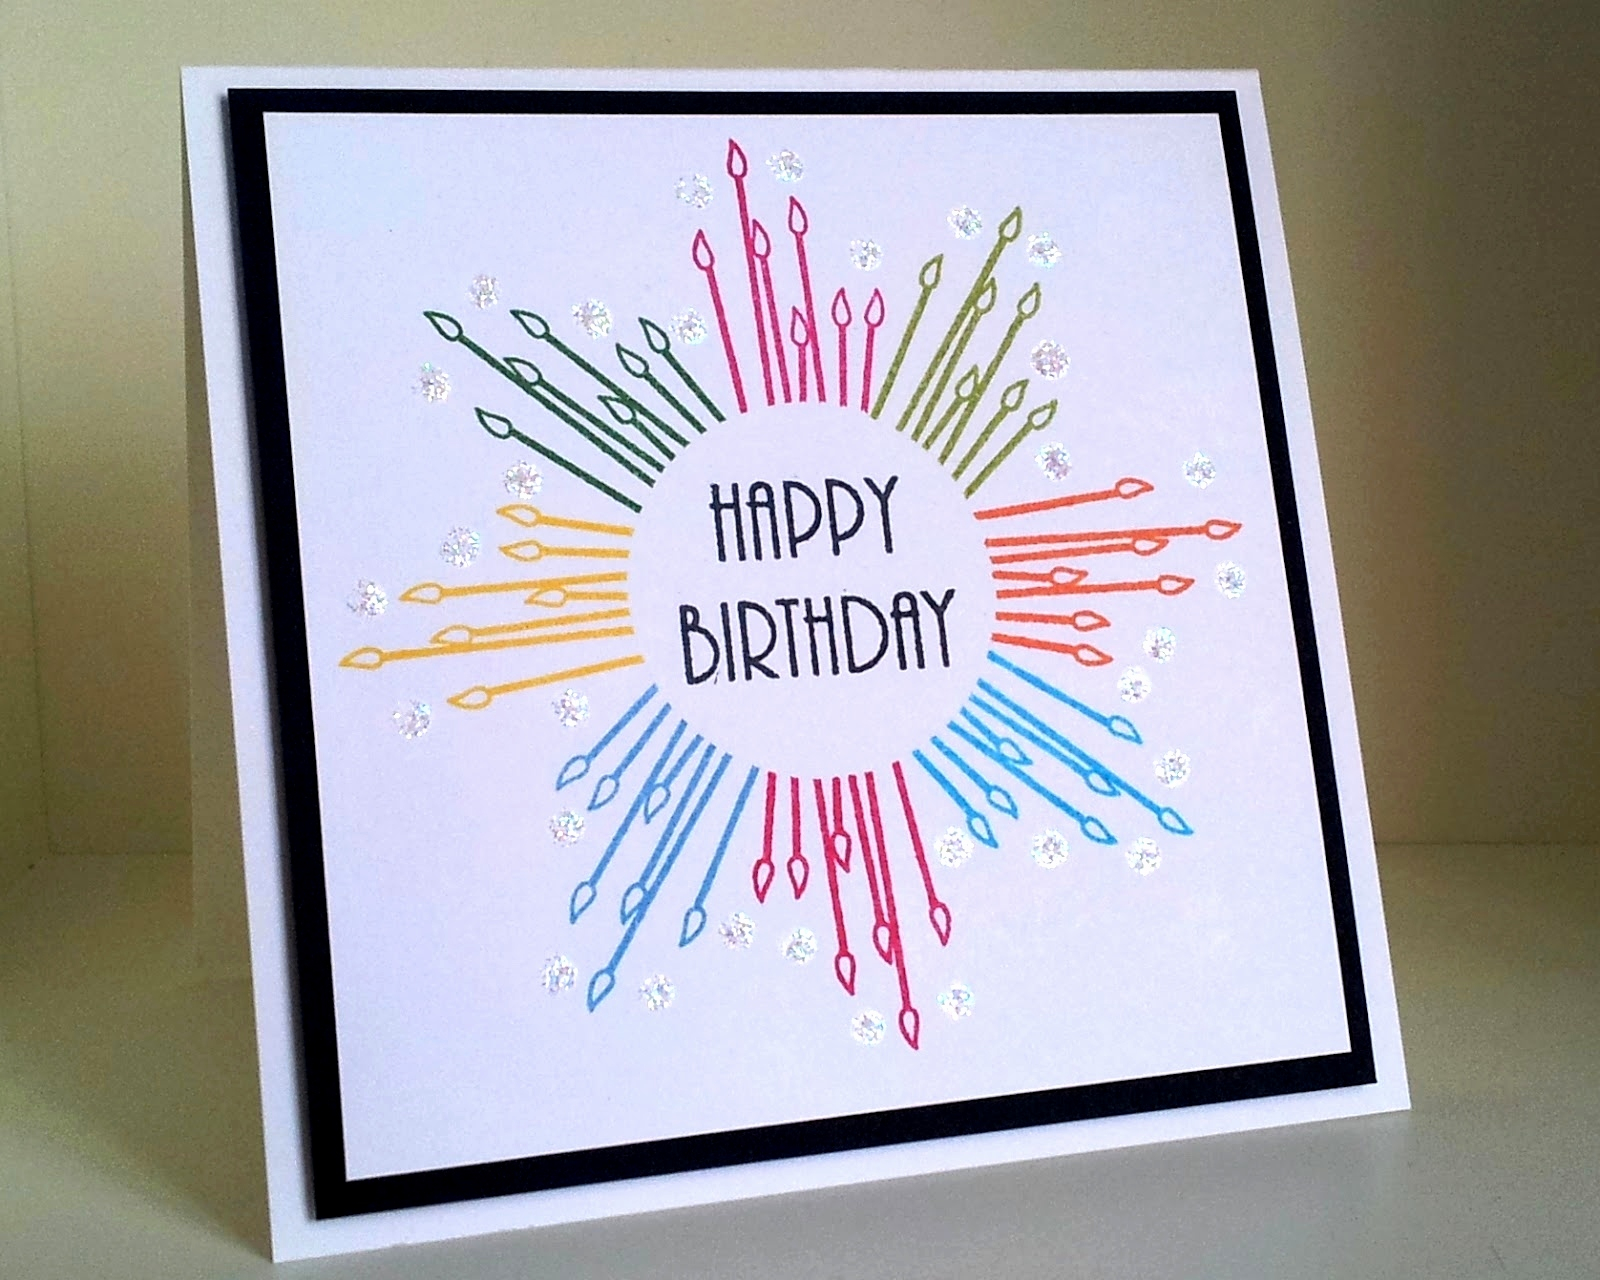 Creative Ideas For Birthday Cards Easy Birthday Card Ideas Inspirational Creative Handmade Birthday